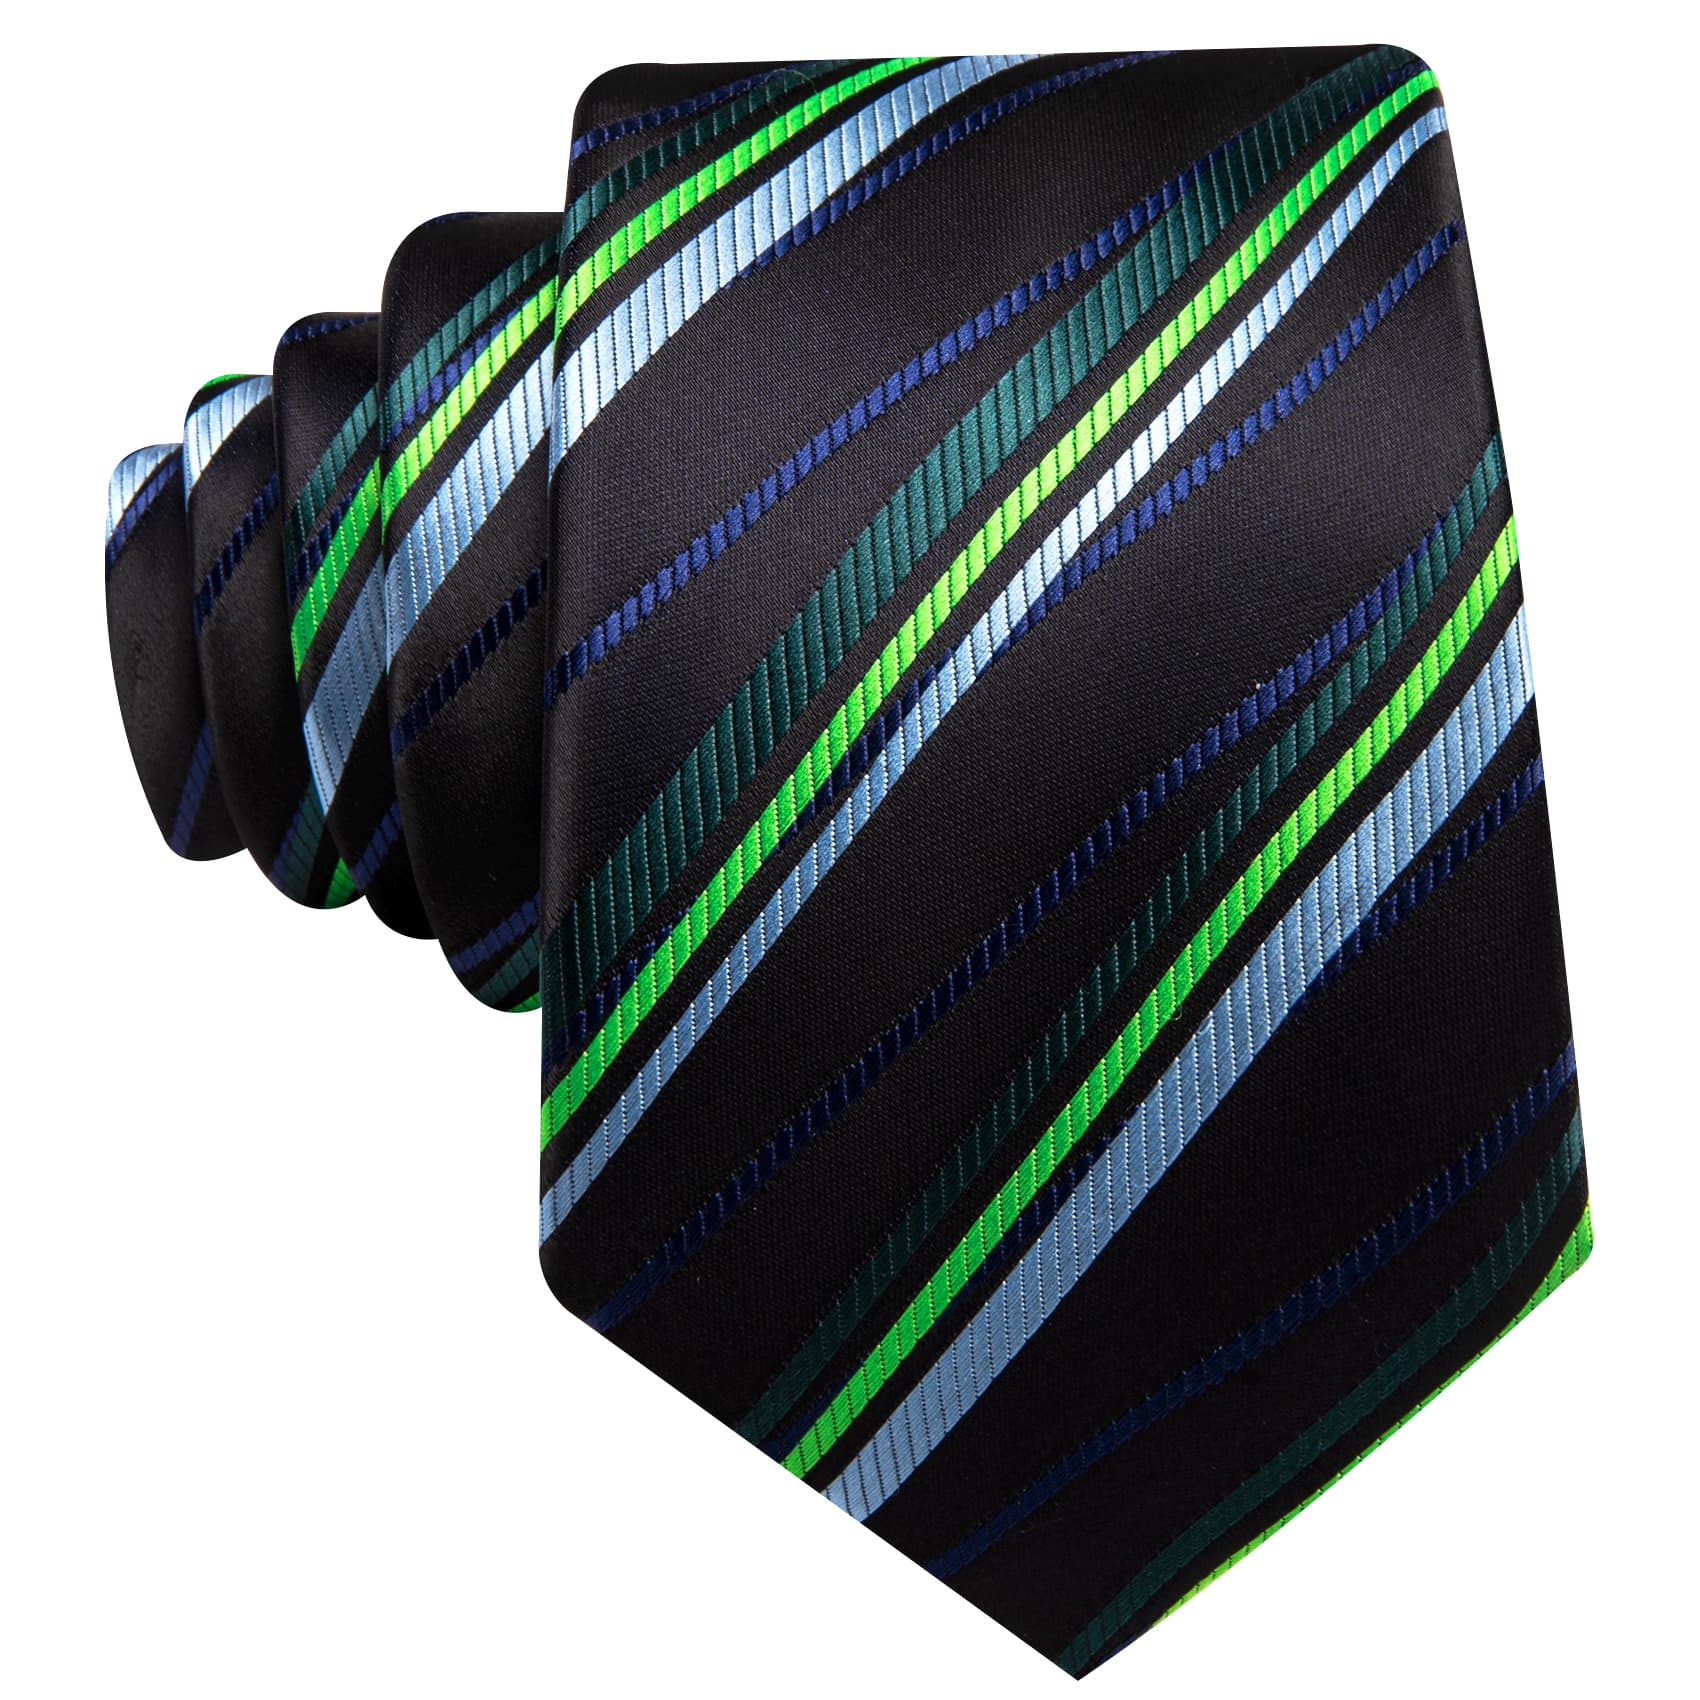 Tie Black Green Blue Checkered Necktie Hanky Cufflinks Set